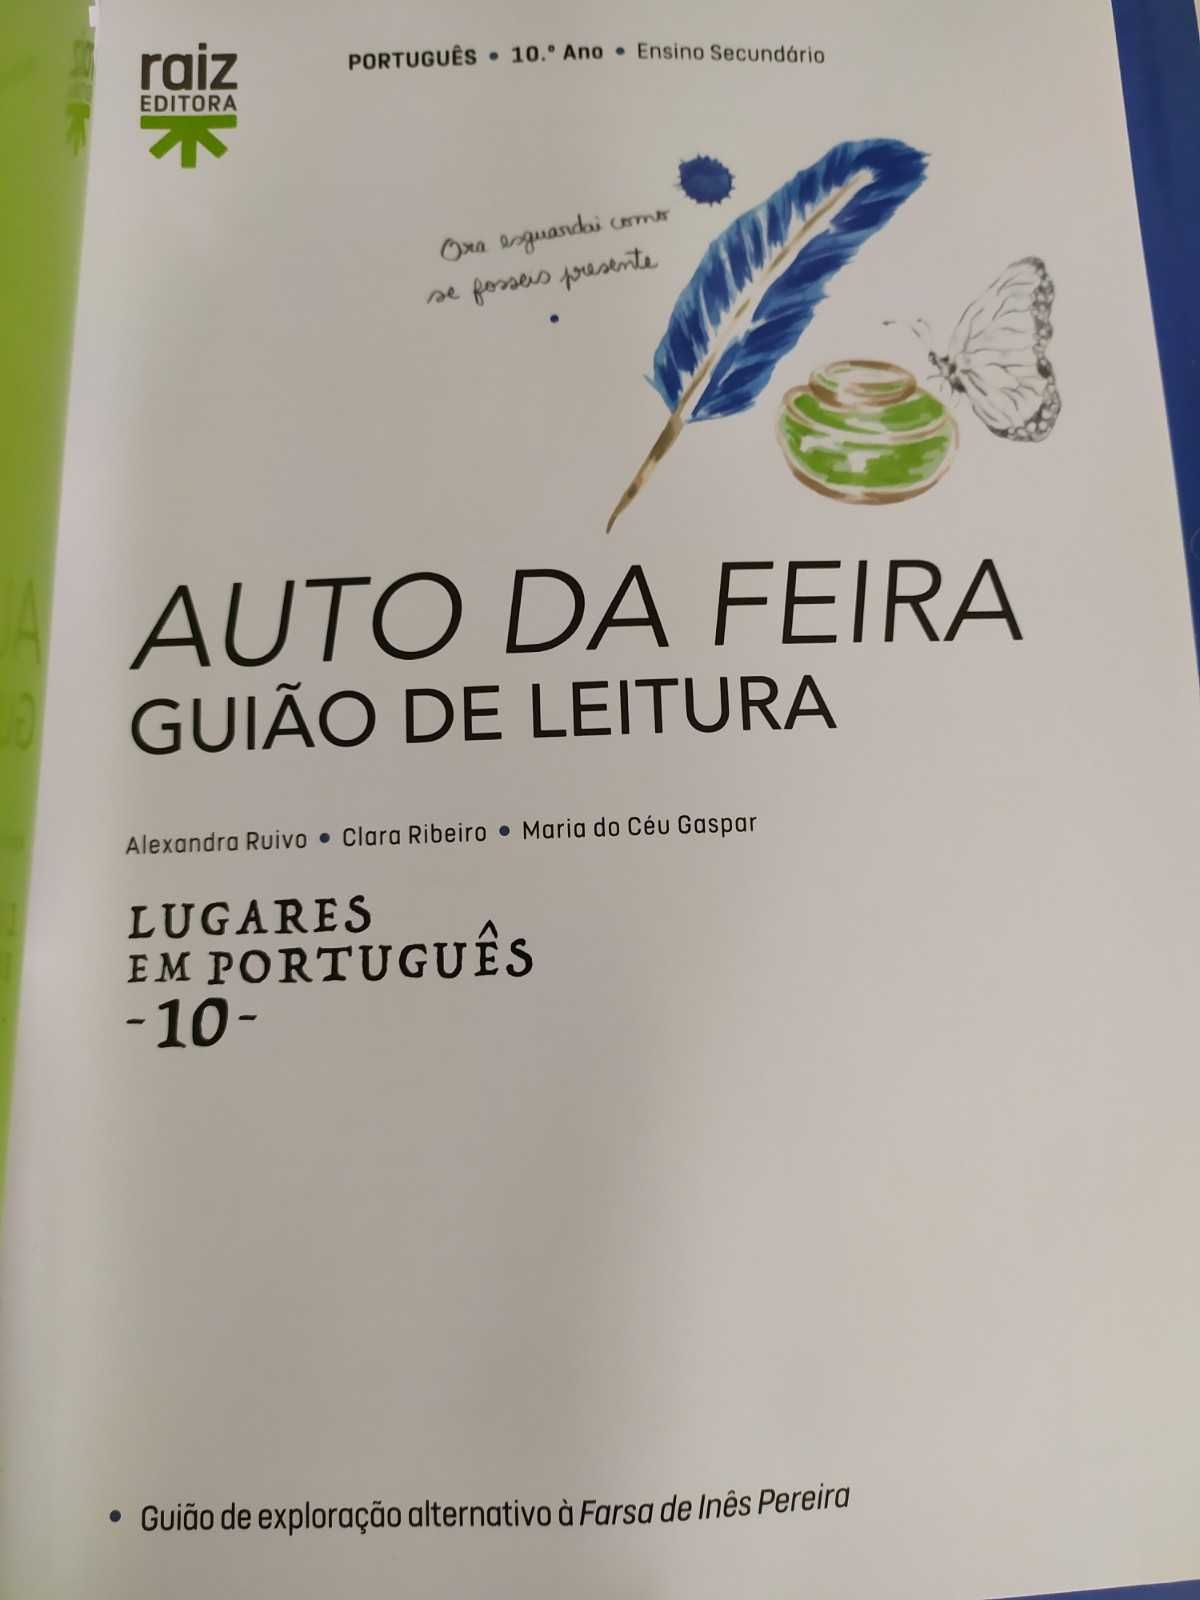 Lugares em Português 10 - 10.º ano - PORTUGUÊS - VERSÃO PROFESSOR